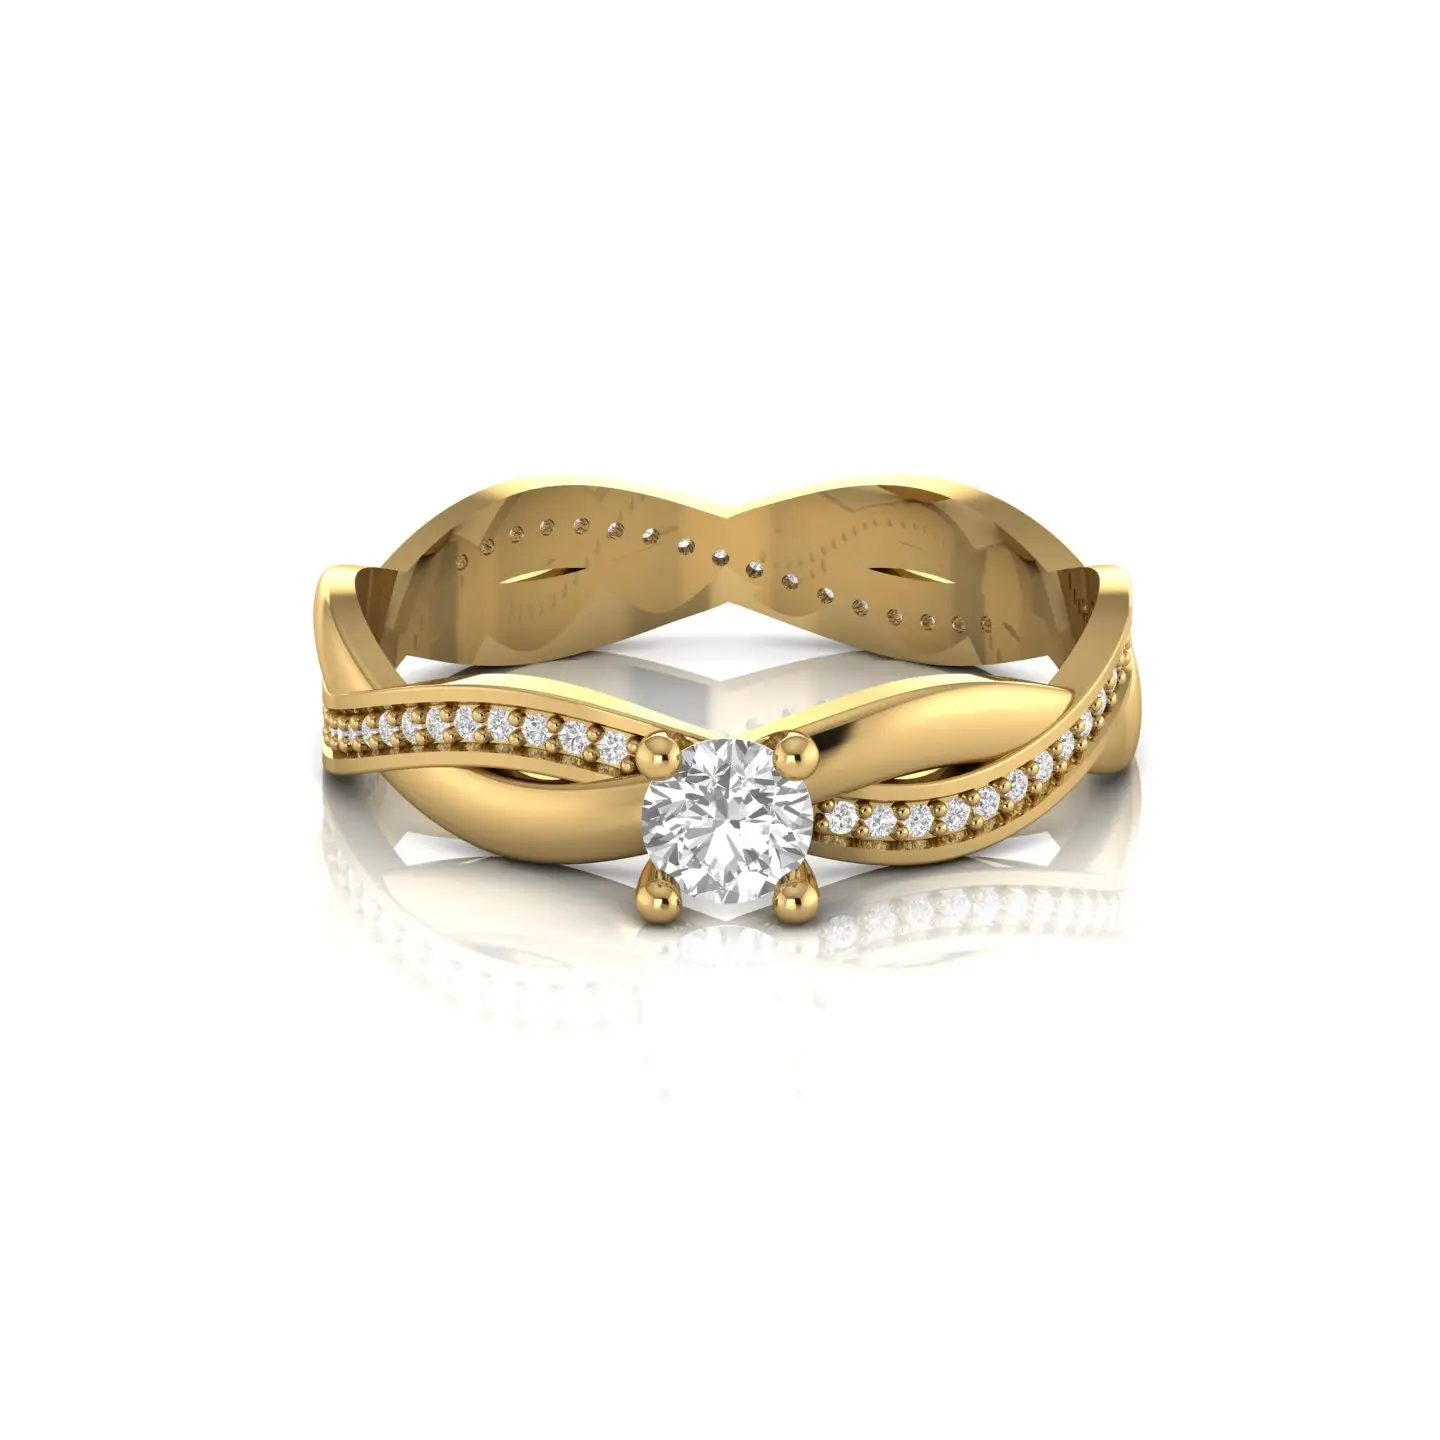 트위스트 클래식 디자인 솔리테어 천연 다이아몬드 약혼 반지 솔리드 14kt 옐로우 골드 고급 보석 여성용 결혼 선물